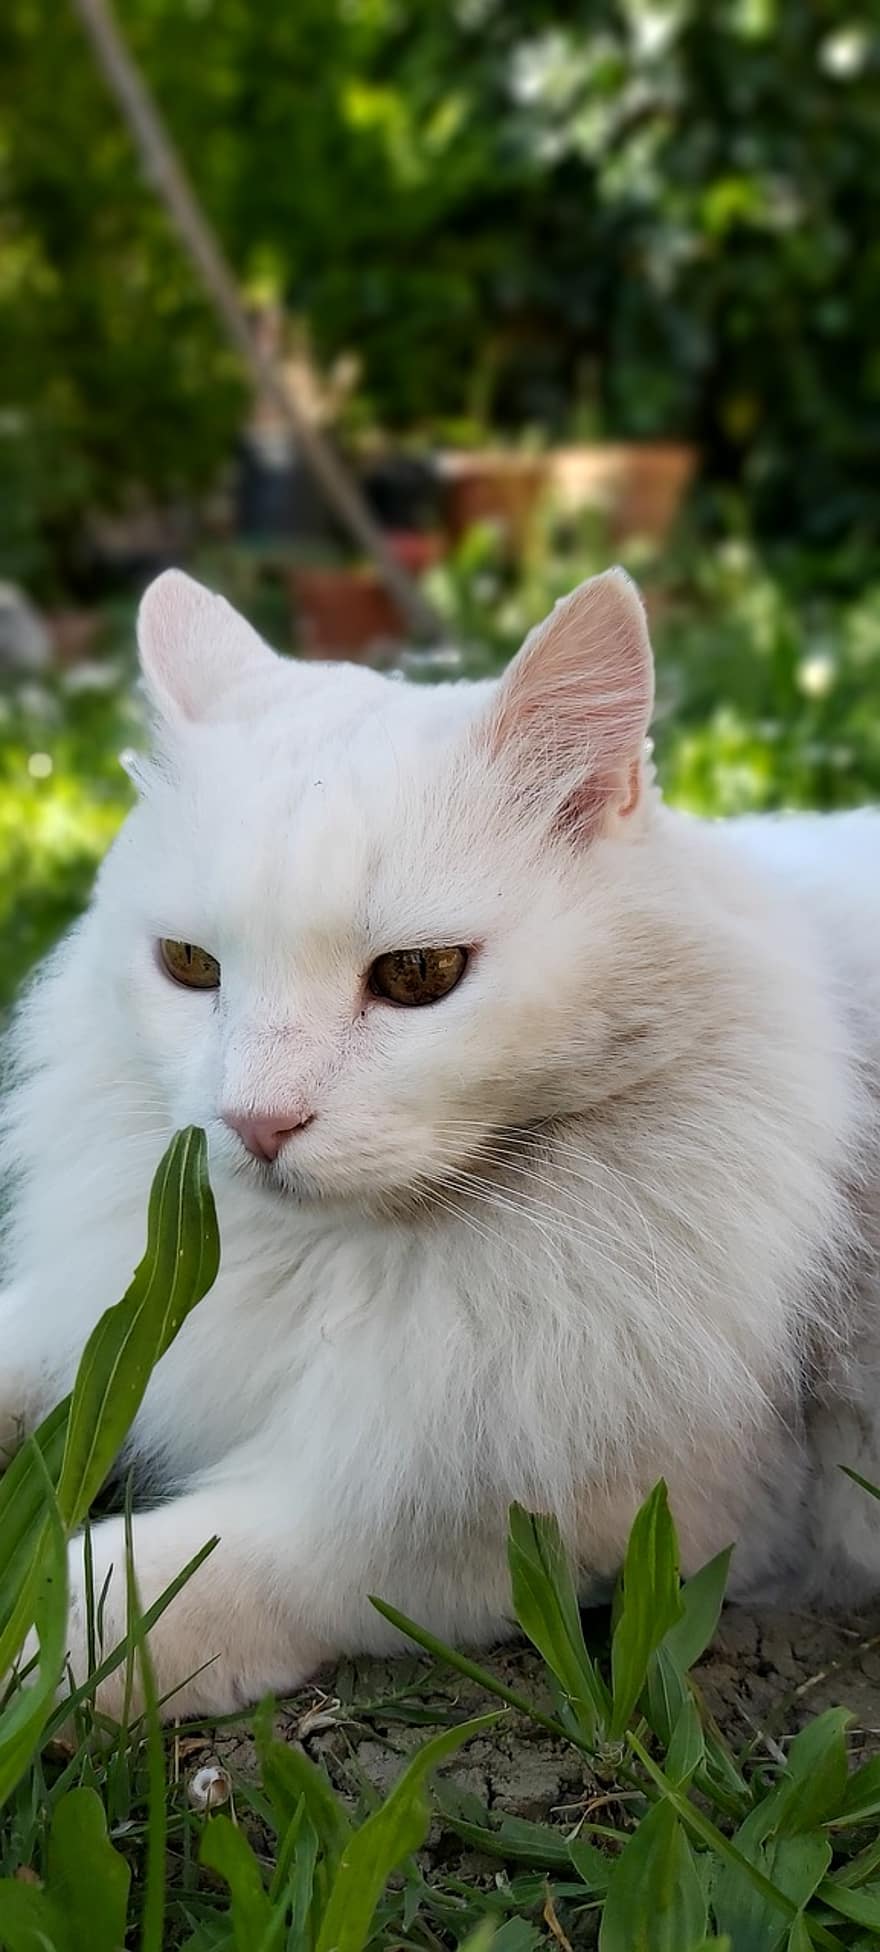 แมวสีขาว, สัตว์, แมว, ธรรมชาติ, ของแมว, ตา, ดู, สวน, ฤดูใบไม้ผลิ